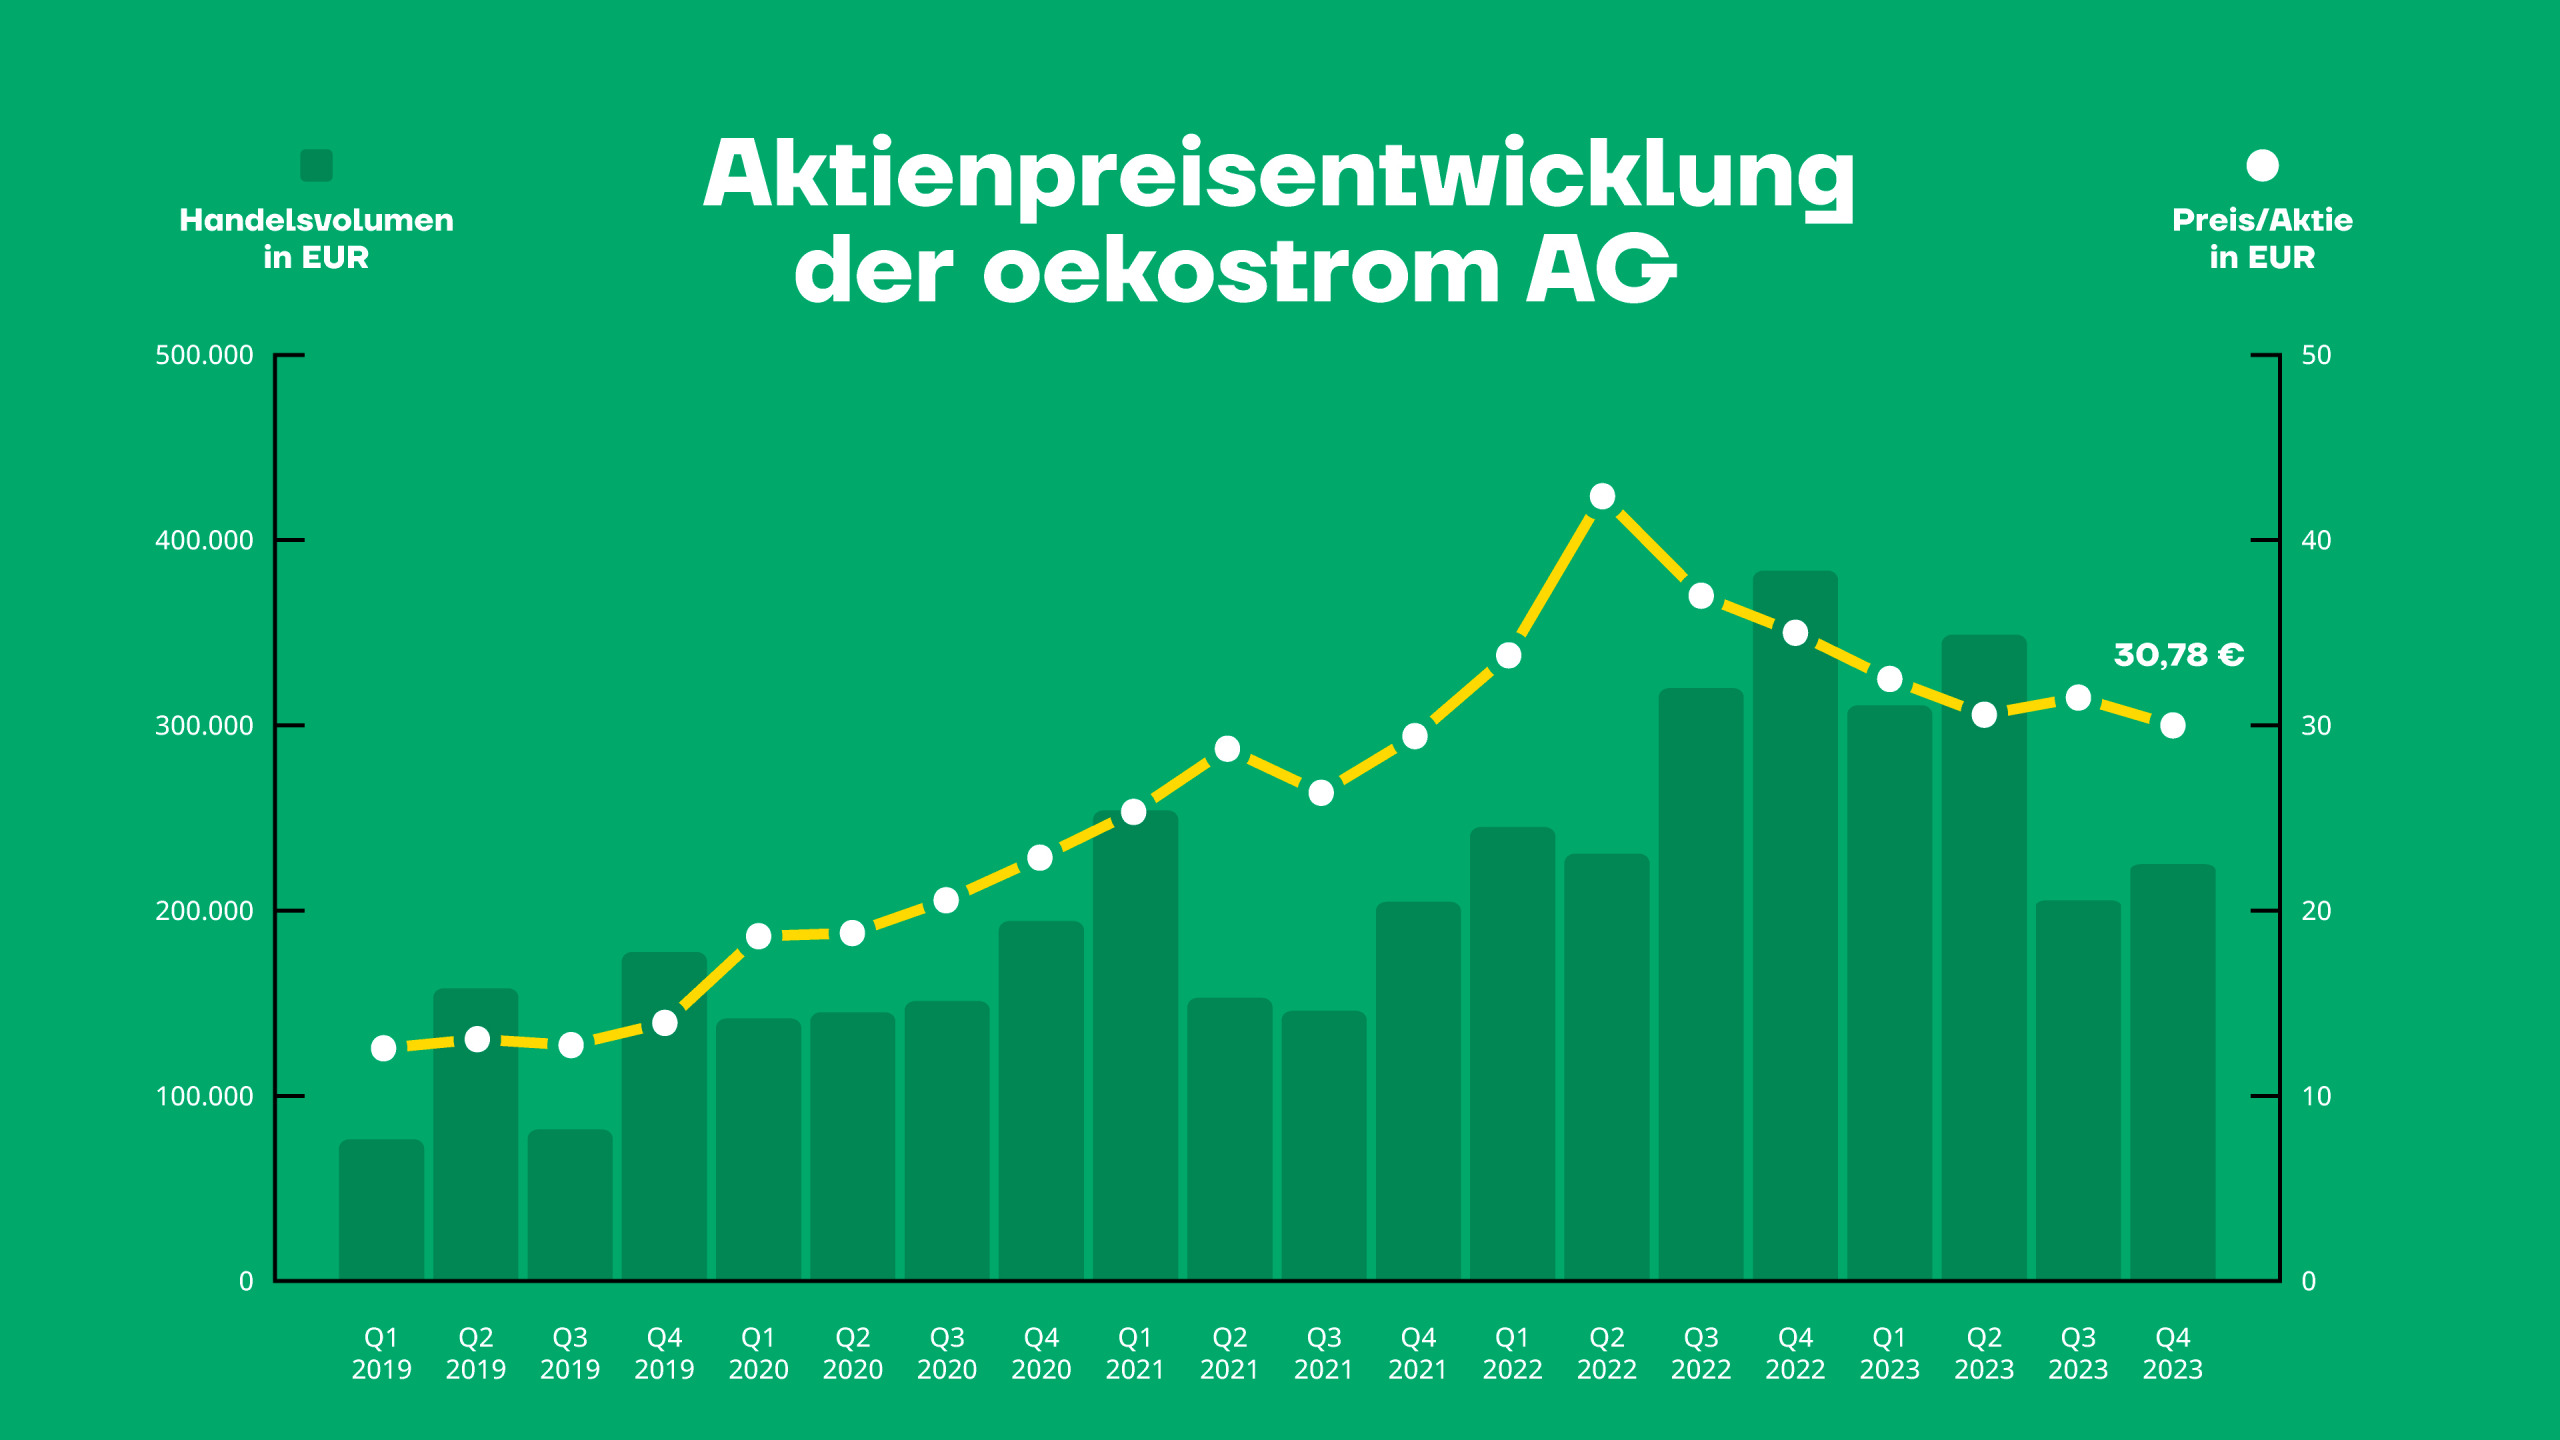 Aktienpreisentwicklung der oekostrom AG. Preis in Q4 2023: 30,78 €